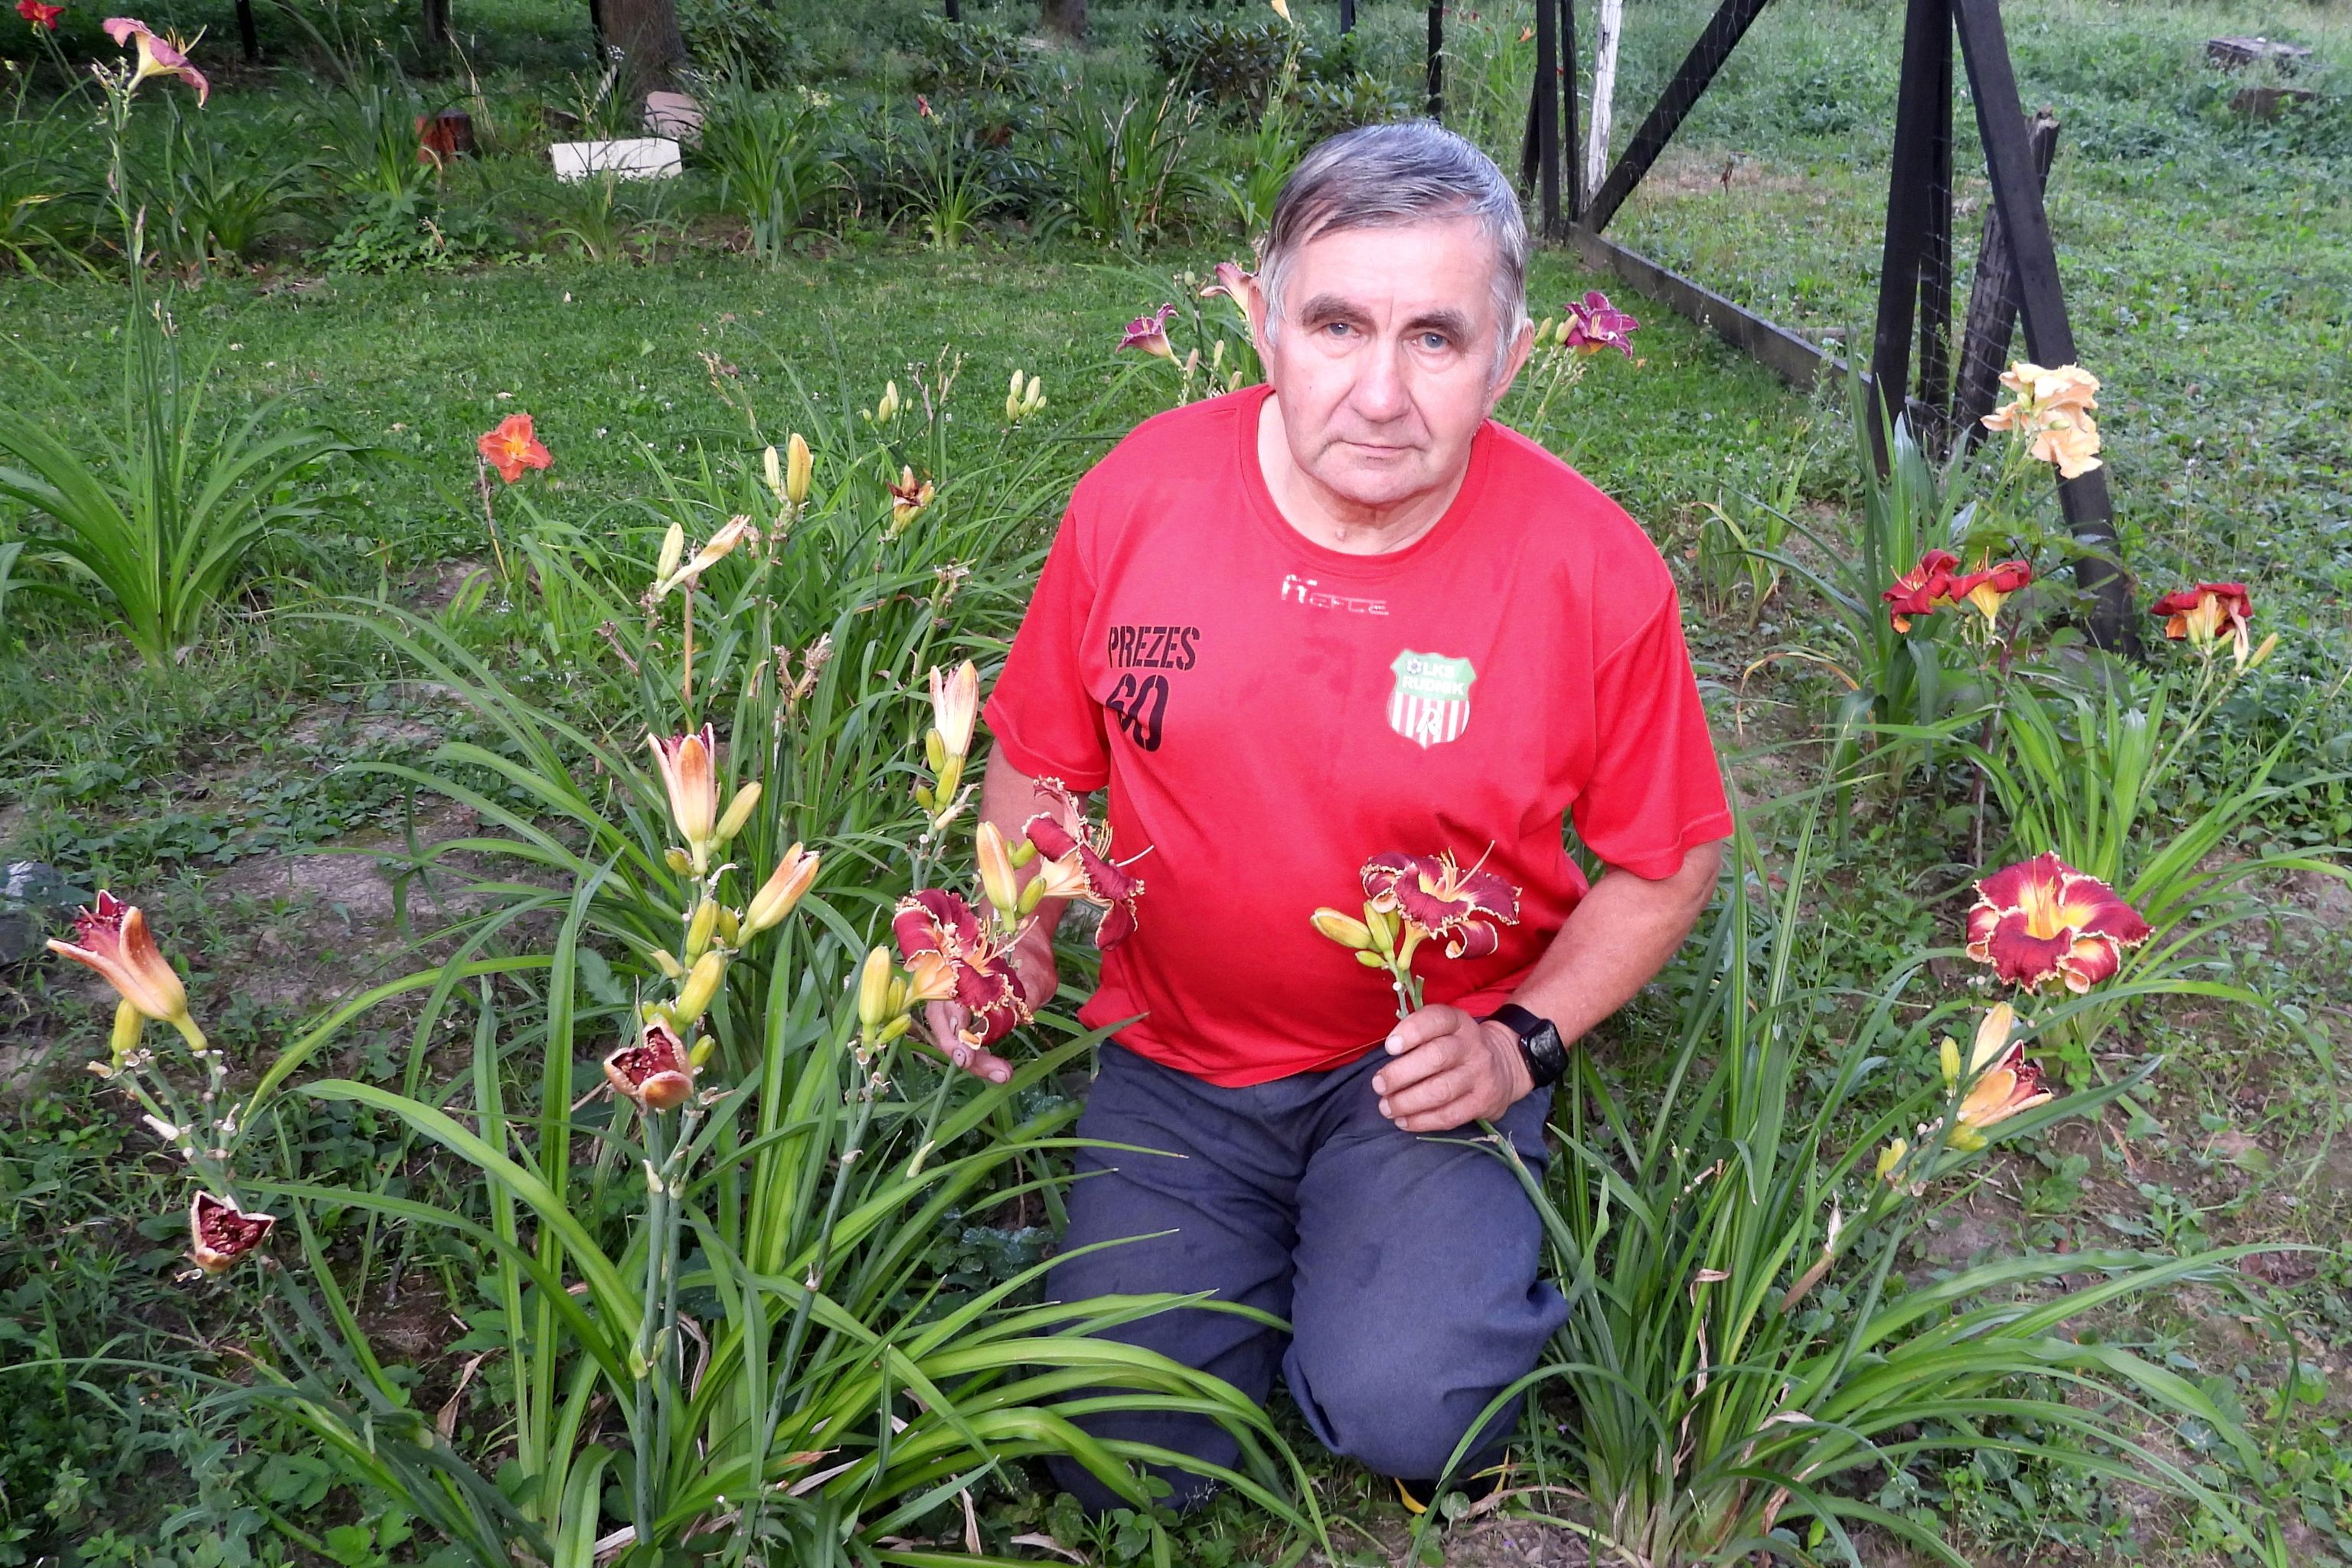 Ogród w Rudniku. Wokół lilie i liliowce